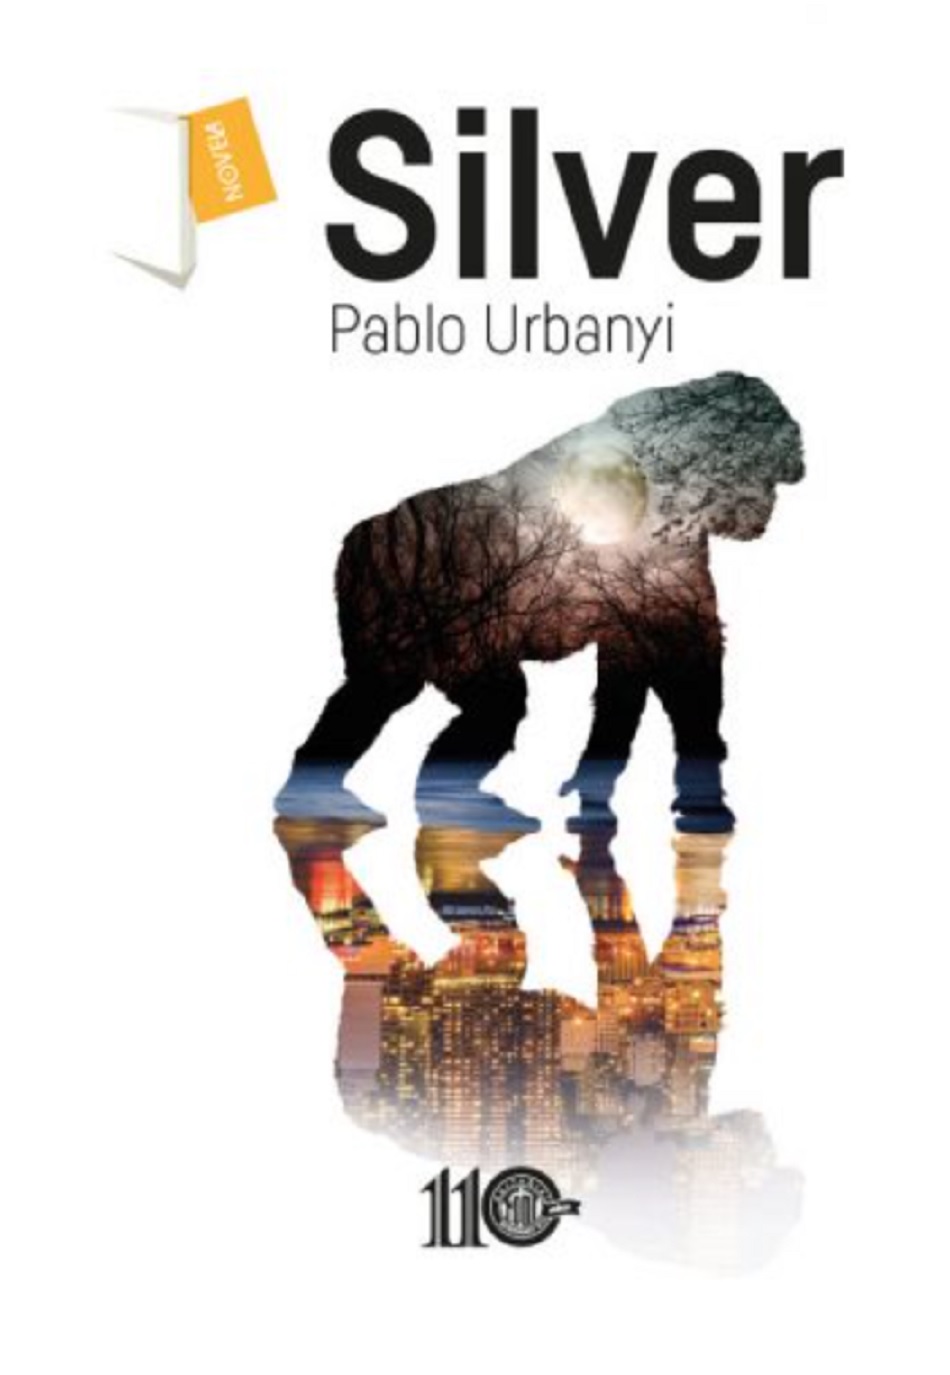 Silver de Pablo Urbanyi